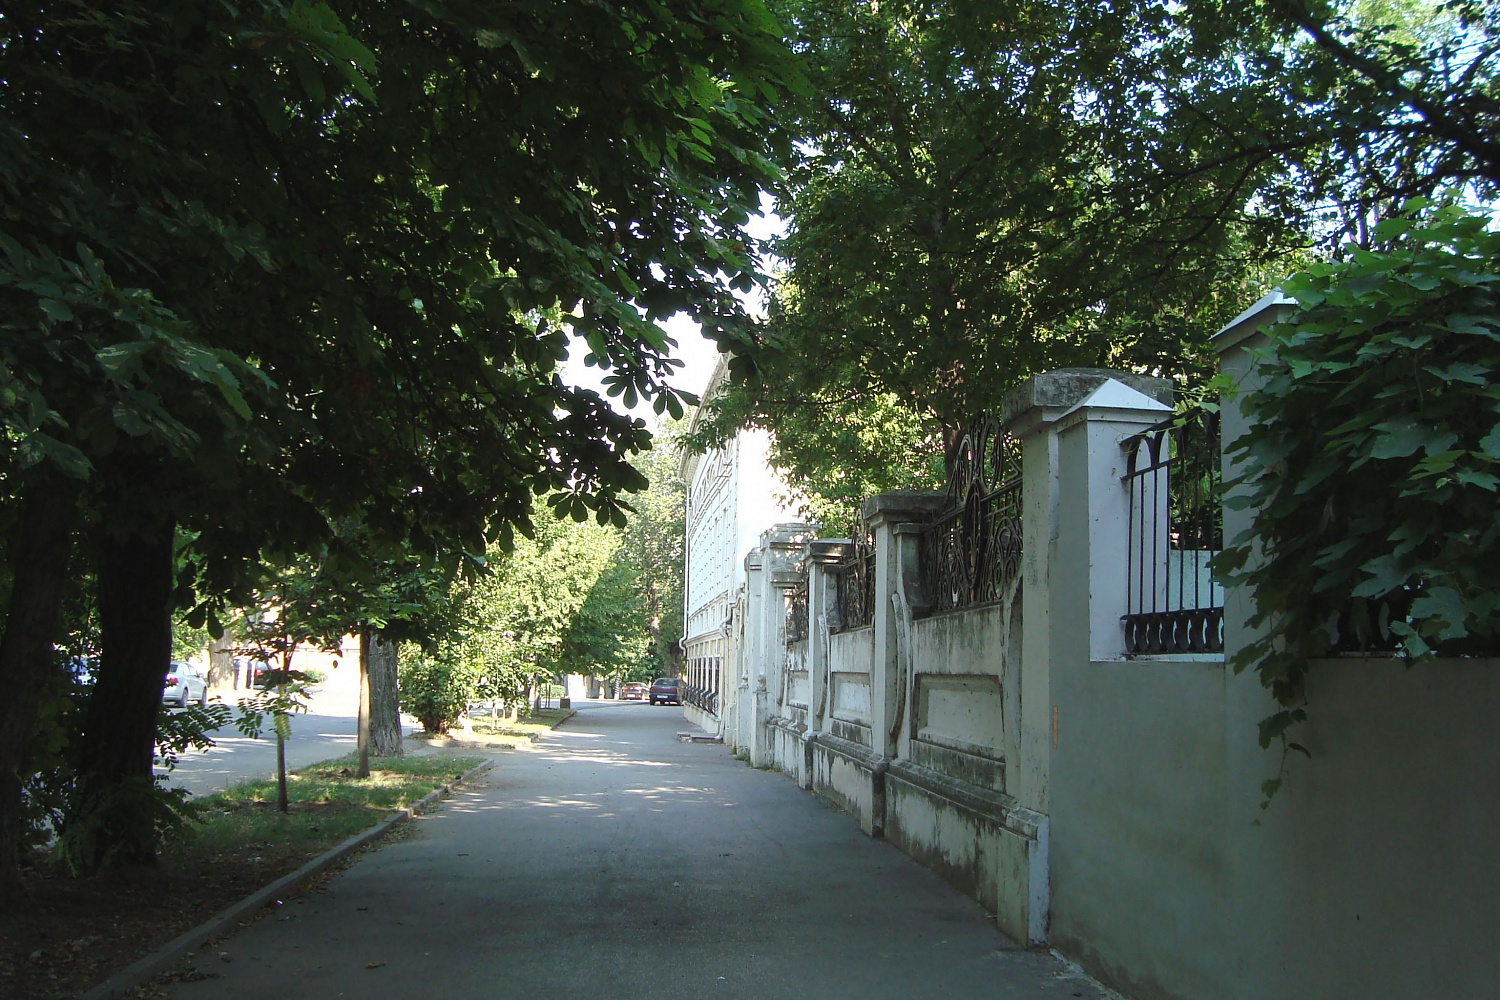 Греческая улица в районе дома Авьерино Фотография О. Галушко. 2019 г.